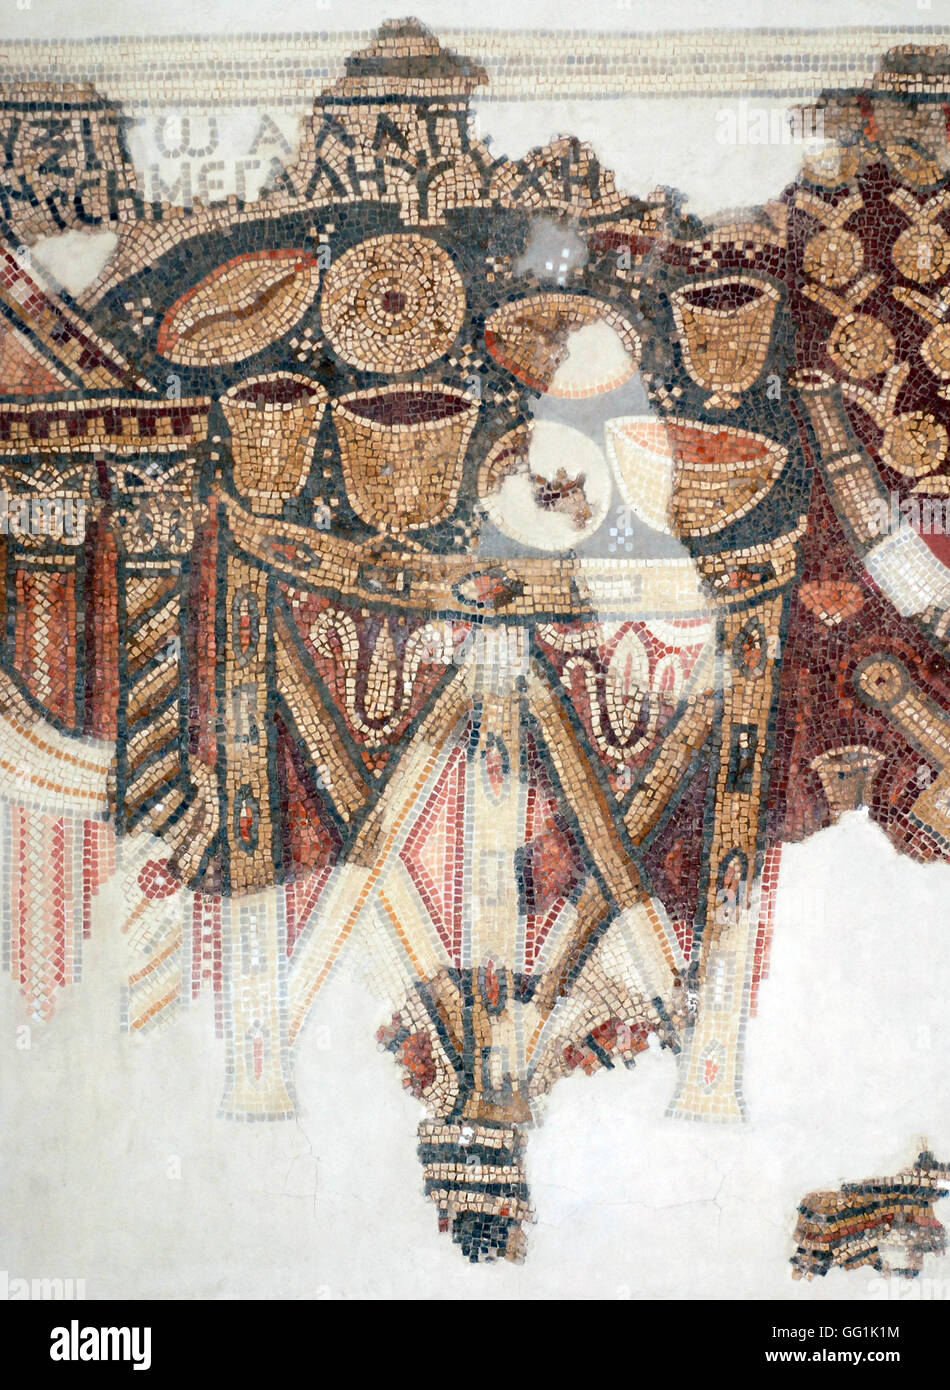 5892. El-Khirbe sinagoga samaritana (Samaria) risalente al 4th. C. AD. Particolare del pavimento a mosaico raffigurante la scheda offerta Foto Stock